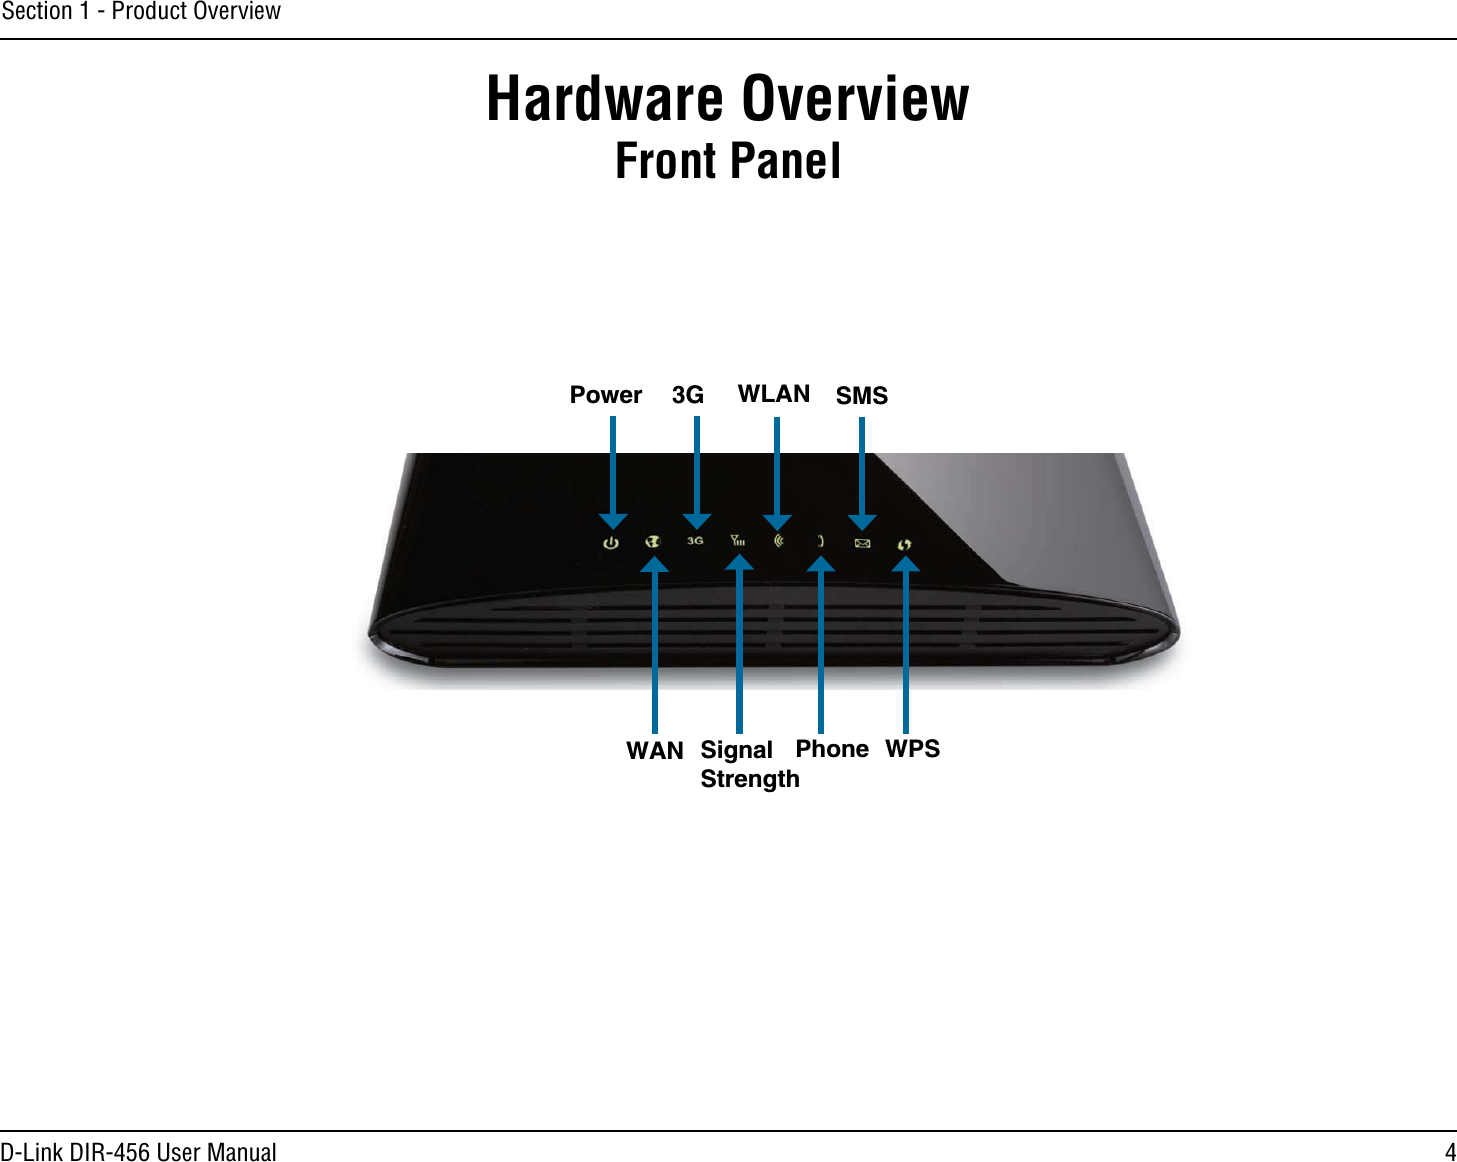 4D-Link DIR-456 User ManualSection 1 - Product OverviewHardware OverviewFront PanelPower 3G WLAN SMSWAN SignalStrengthPhone WPS